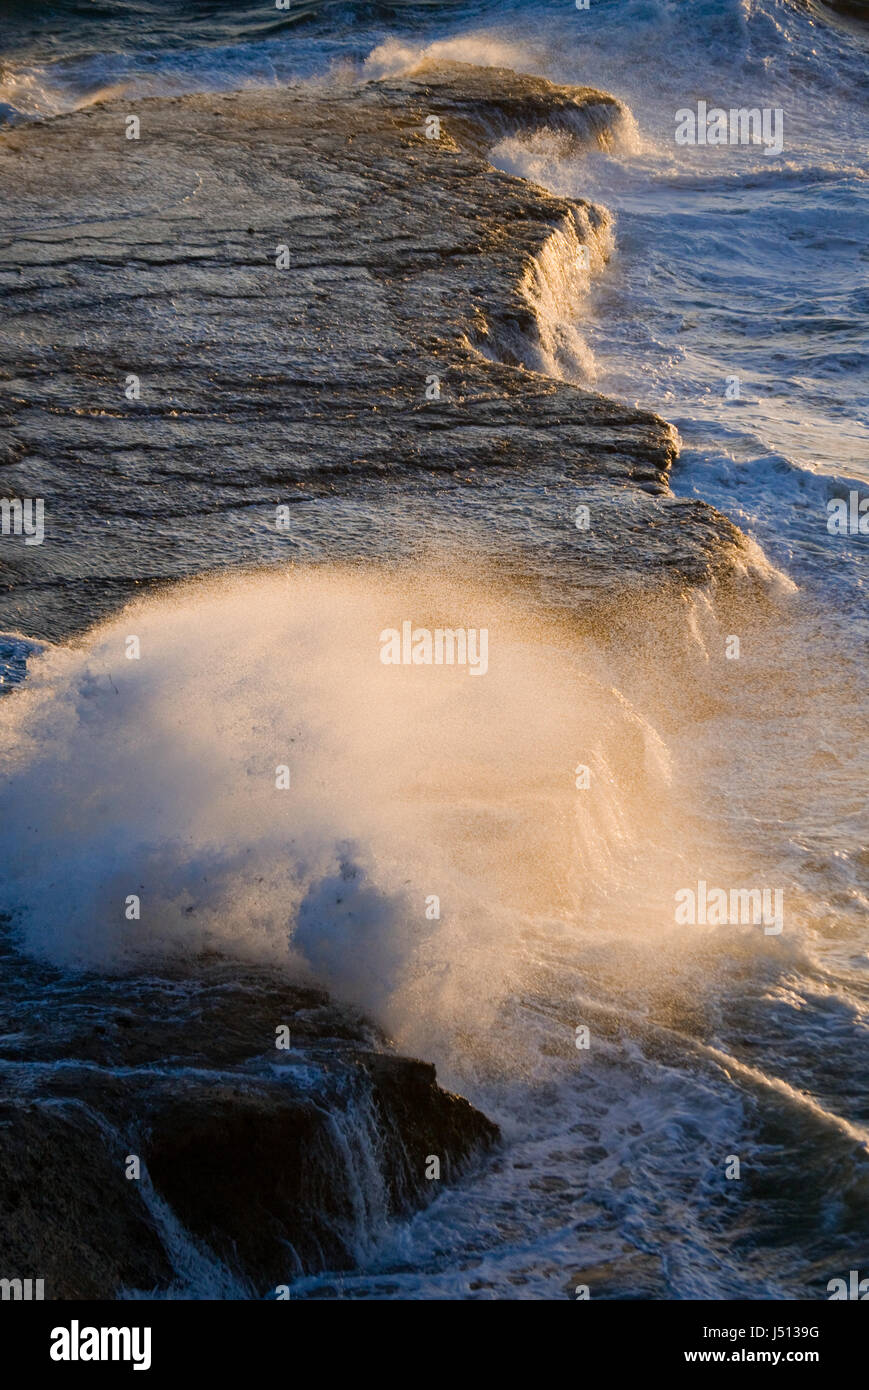 The coastline on the Peninsula Valdes. Waves crashing against the rocks. Argentina. Stock Photo